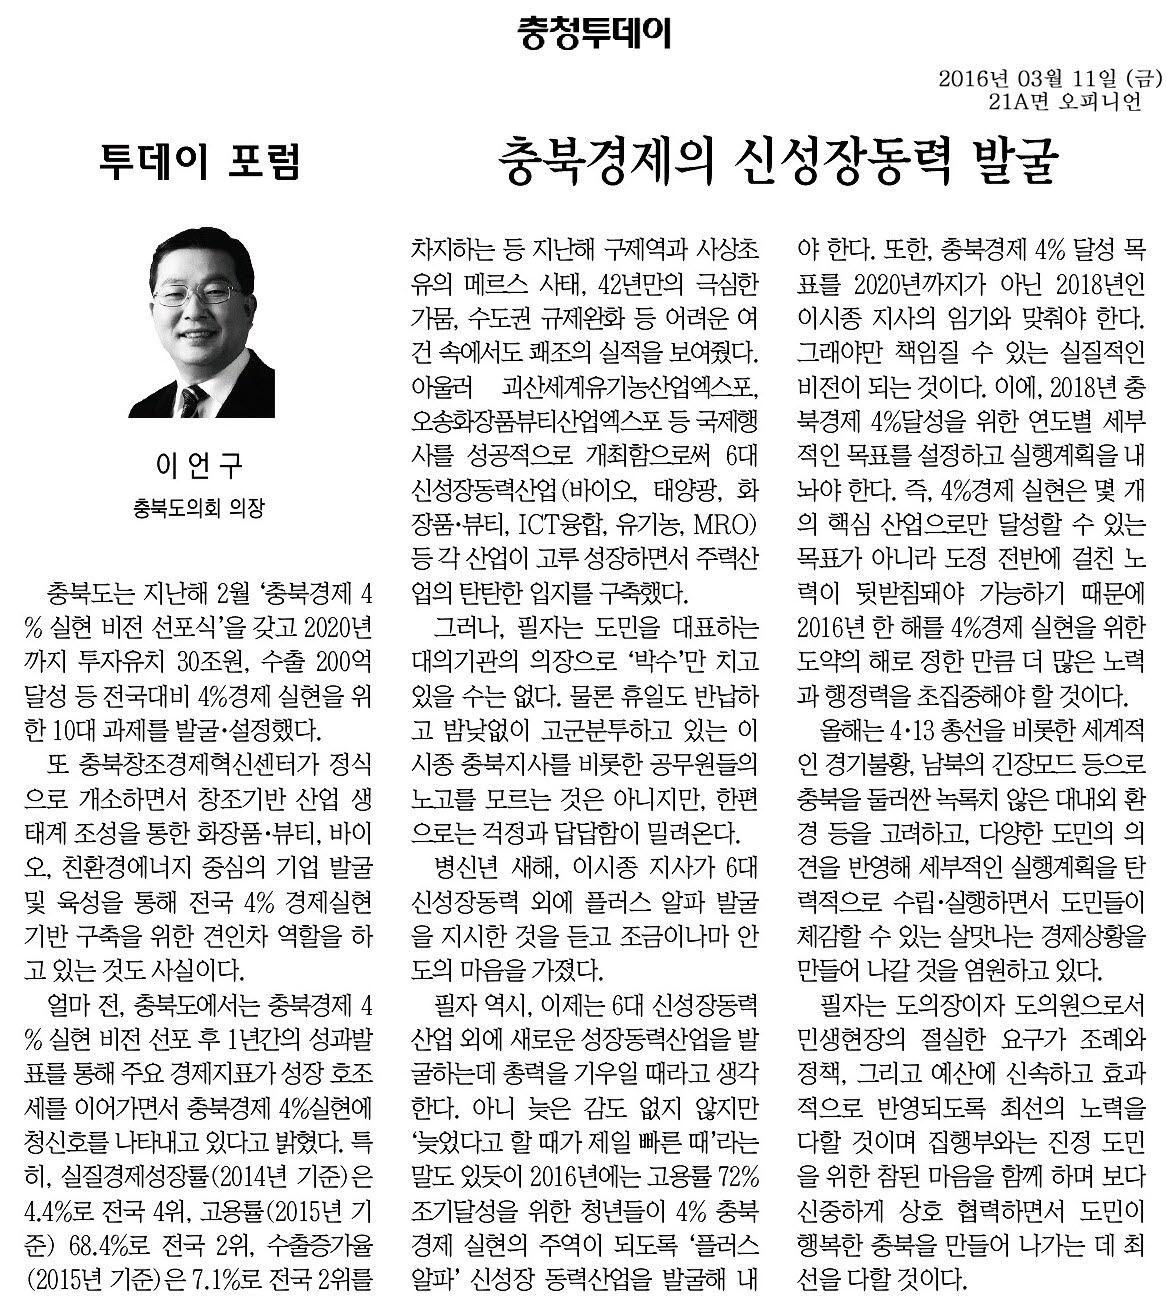 충북경제의 신성장동력 발굴-이언구 의장(충청투데이 2016년 3월 11일) - 1